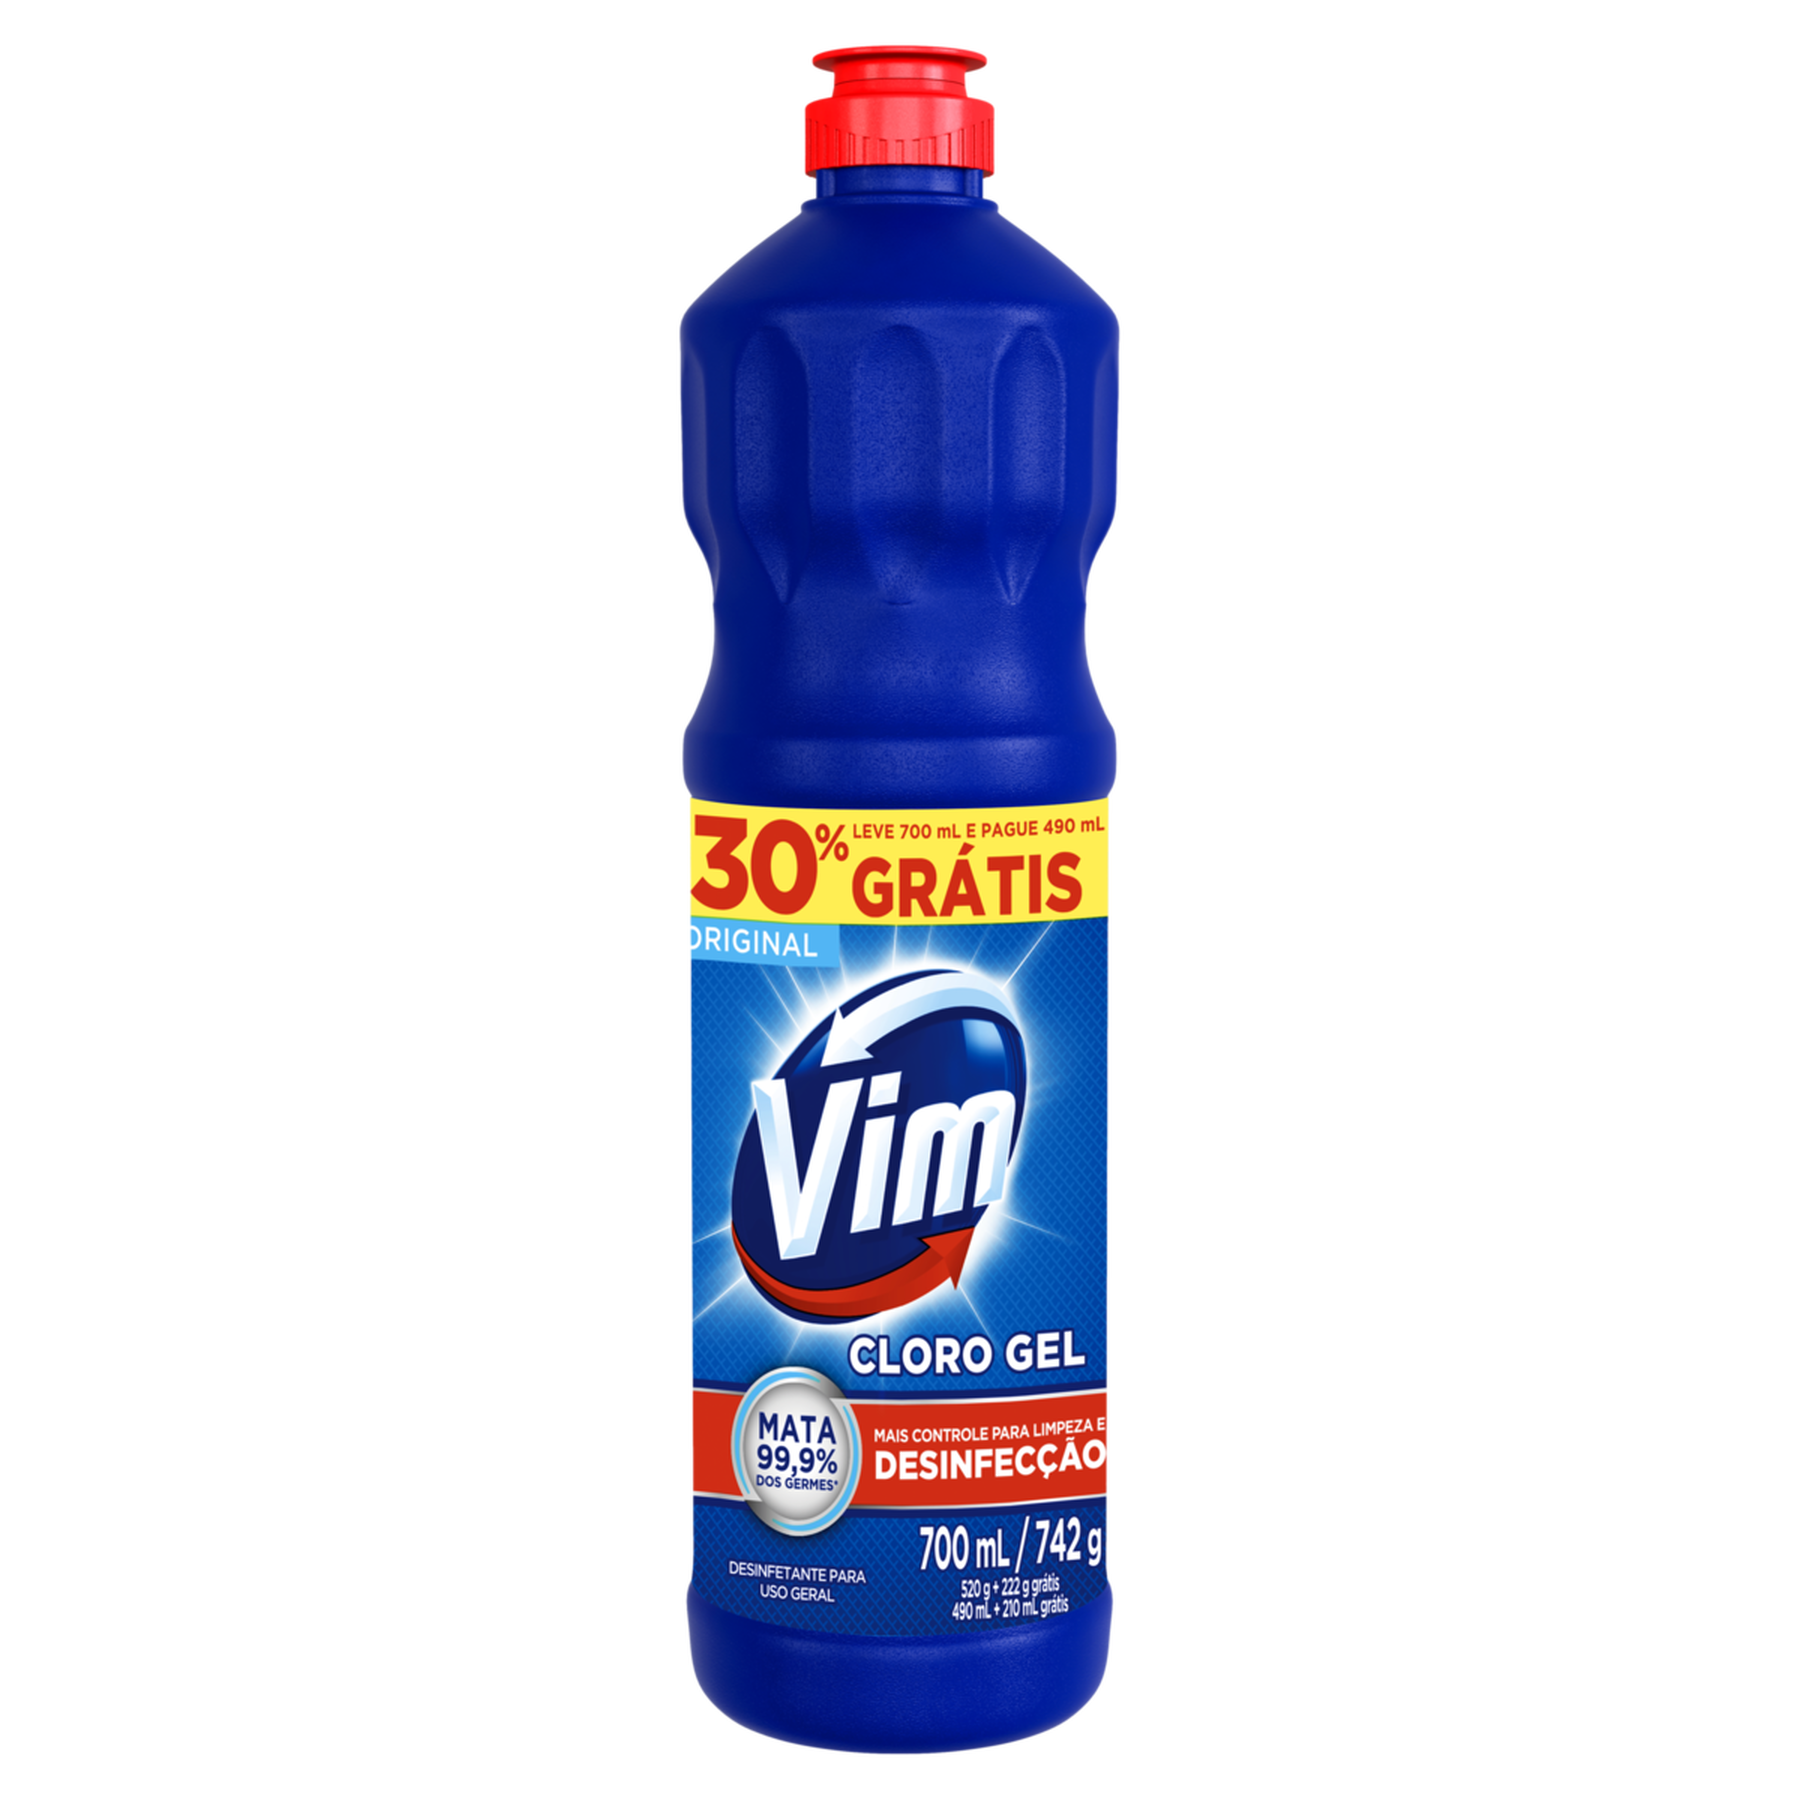 Desinfetante Uso Geral Cloro Gel Original Vim Frasco 700ml - Embalagem 30% Grátis Leve 700ml Pague 490ml